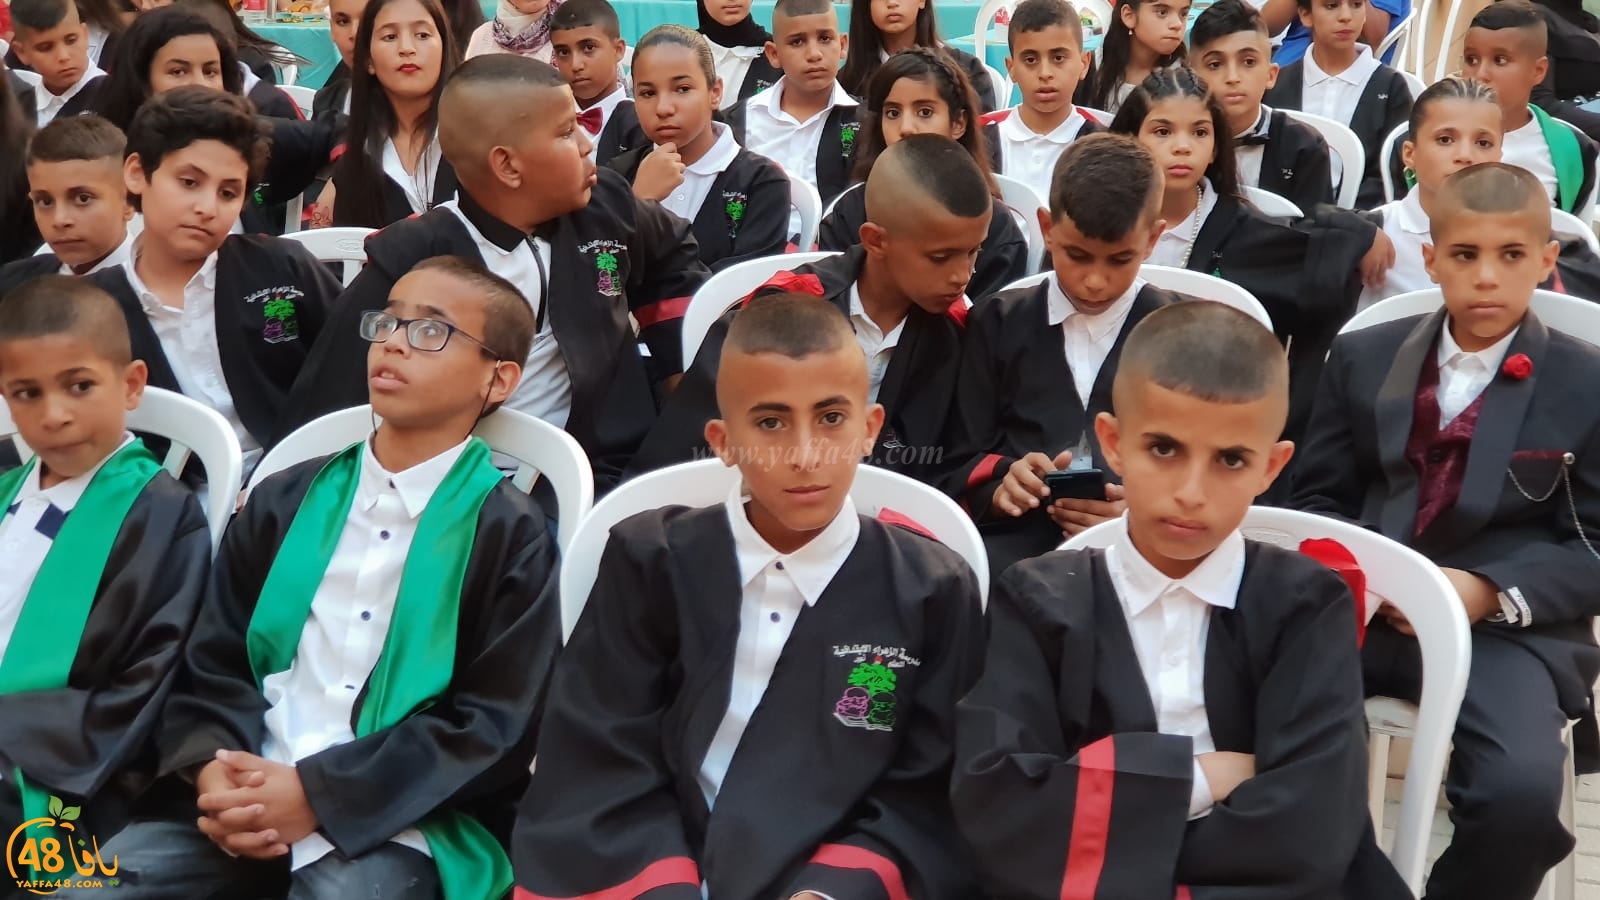 فيديو: مدرسة الزهراء الابتدائية باللد تحتفل بتخريج فوج جديد من طلابها